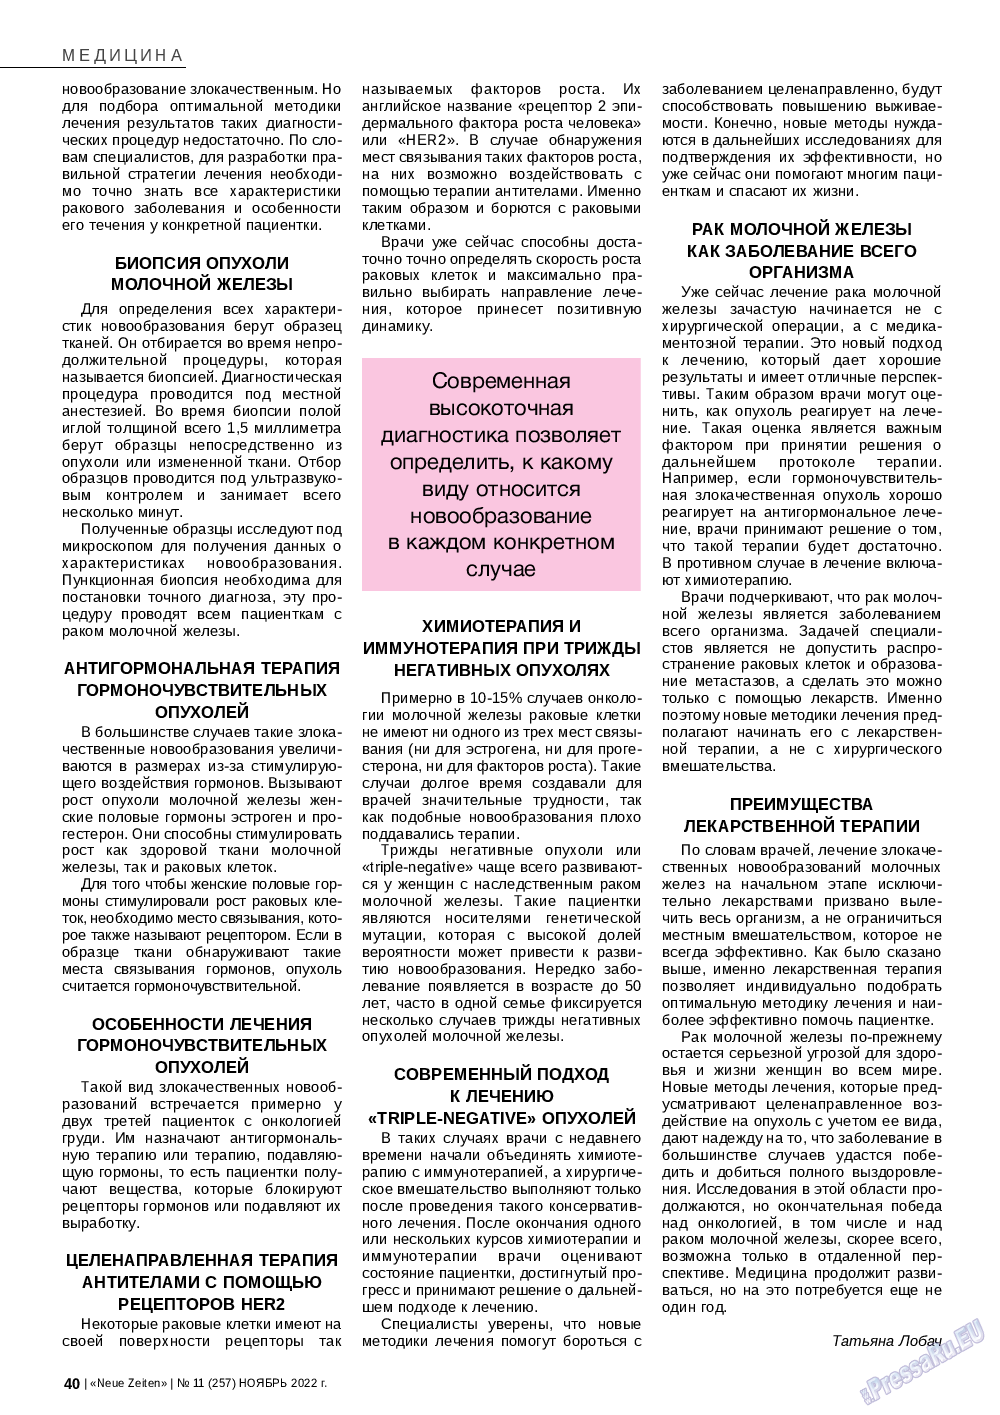 Neue Zeiten, журнал. 2022 №11 стр.40